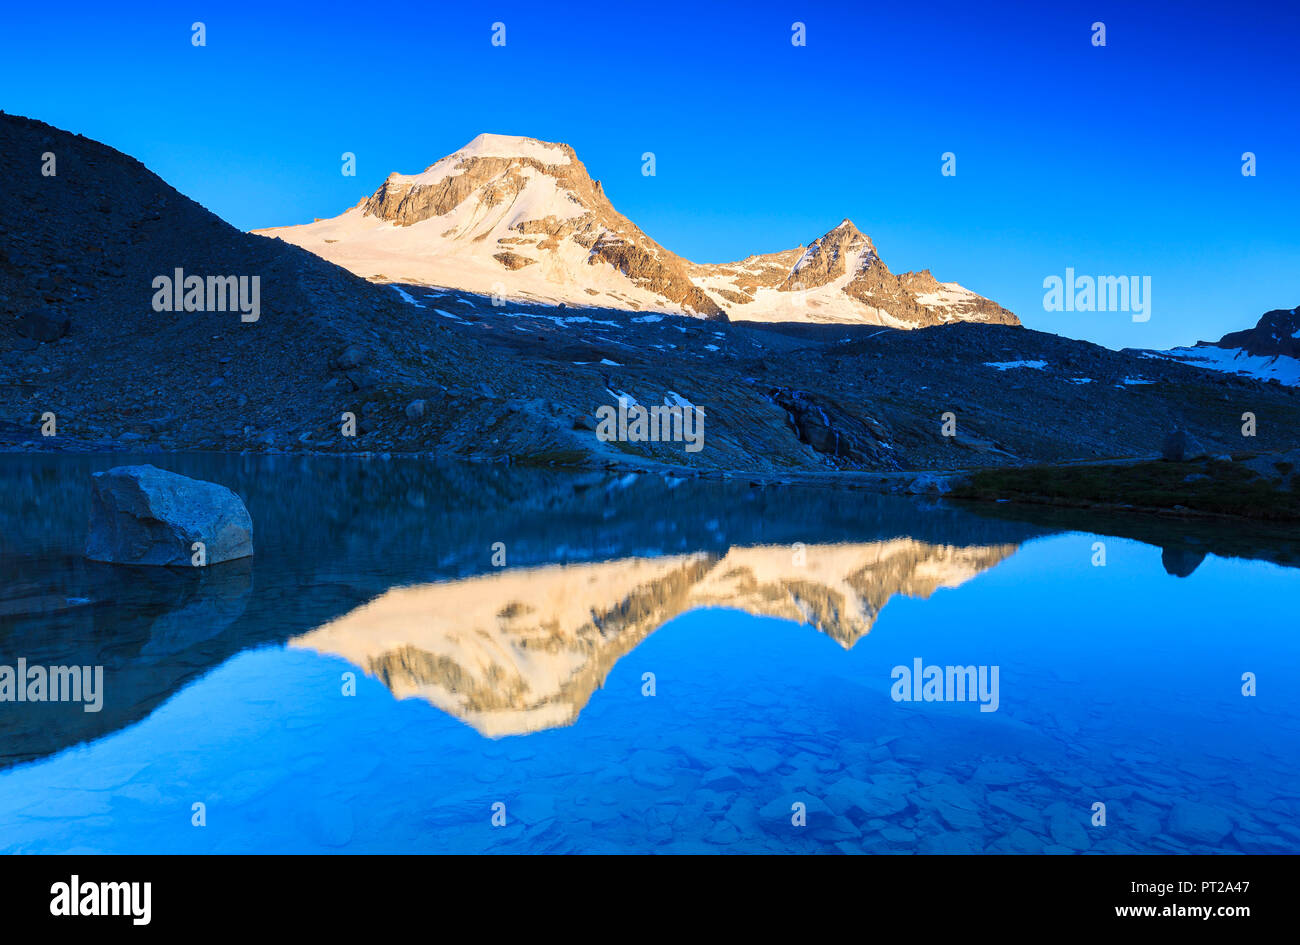 Ciarforon und Bec de Moncorvè Montchair sind im See spiegeln, Vittorio Emanuele II Hütte, Valsavarance, Nationalpark Gran Paradiso, Aostatal, Italien, Europa Stockfoto